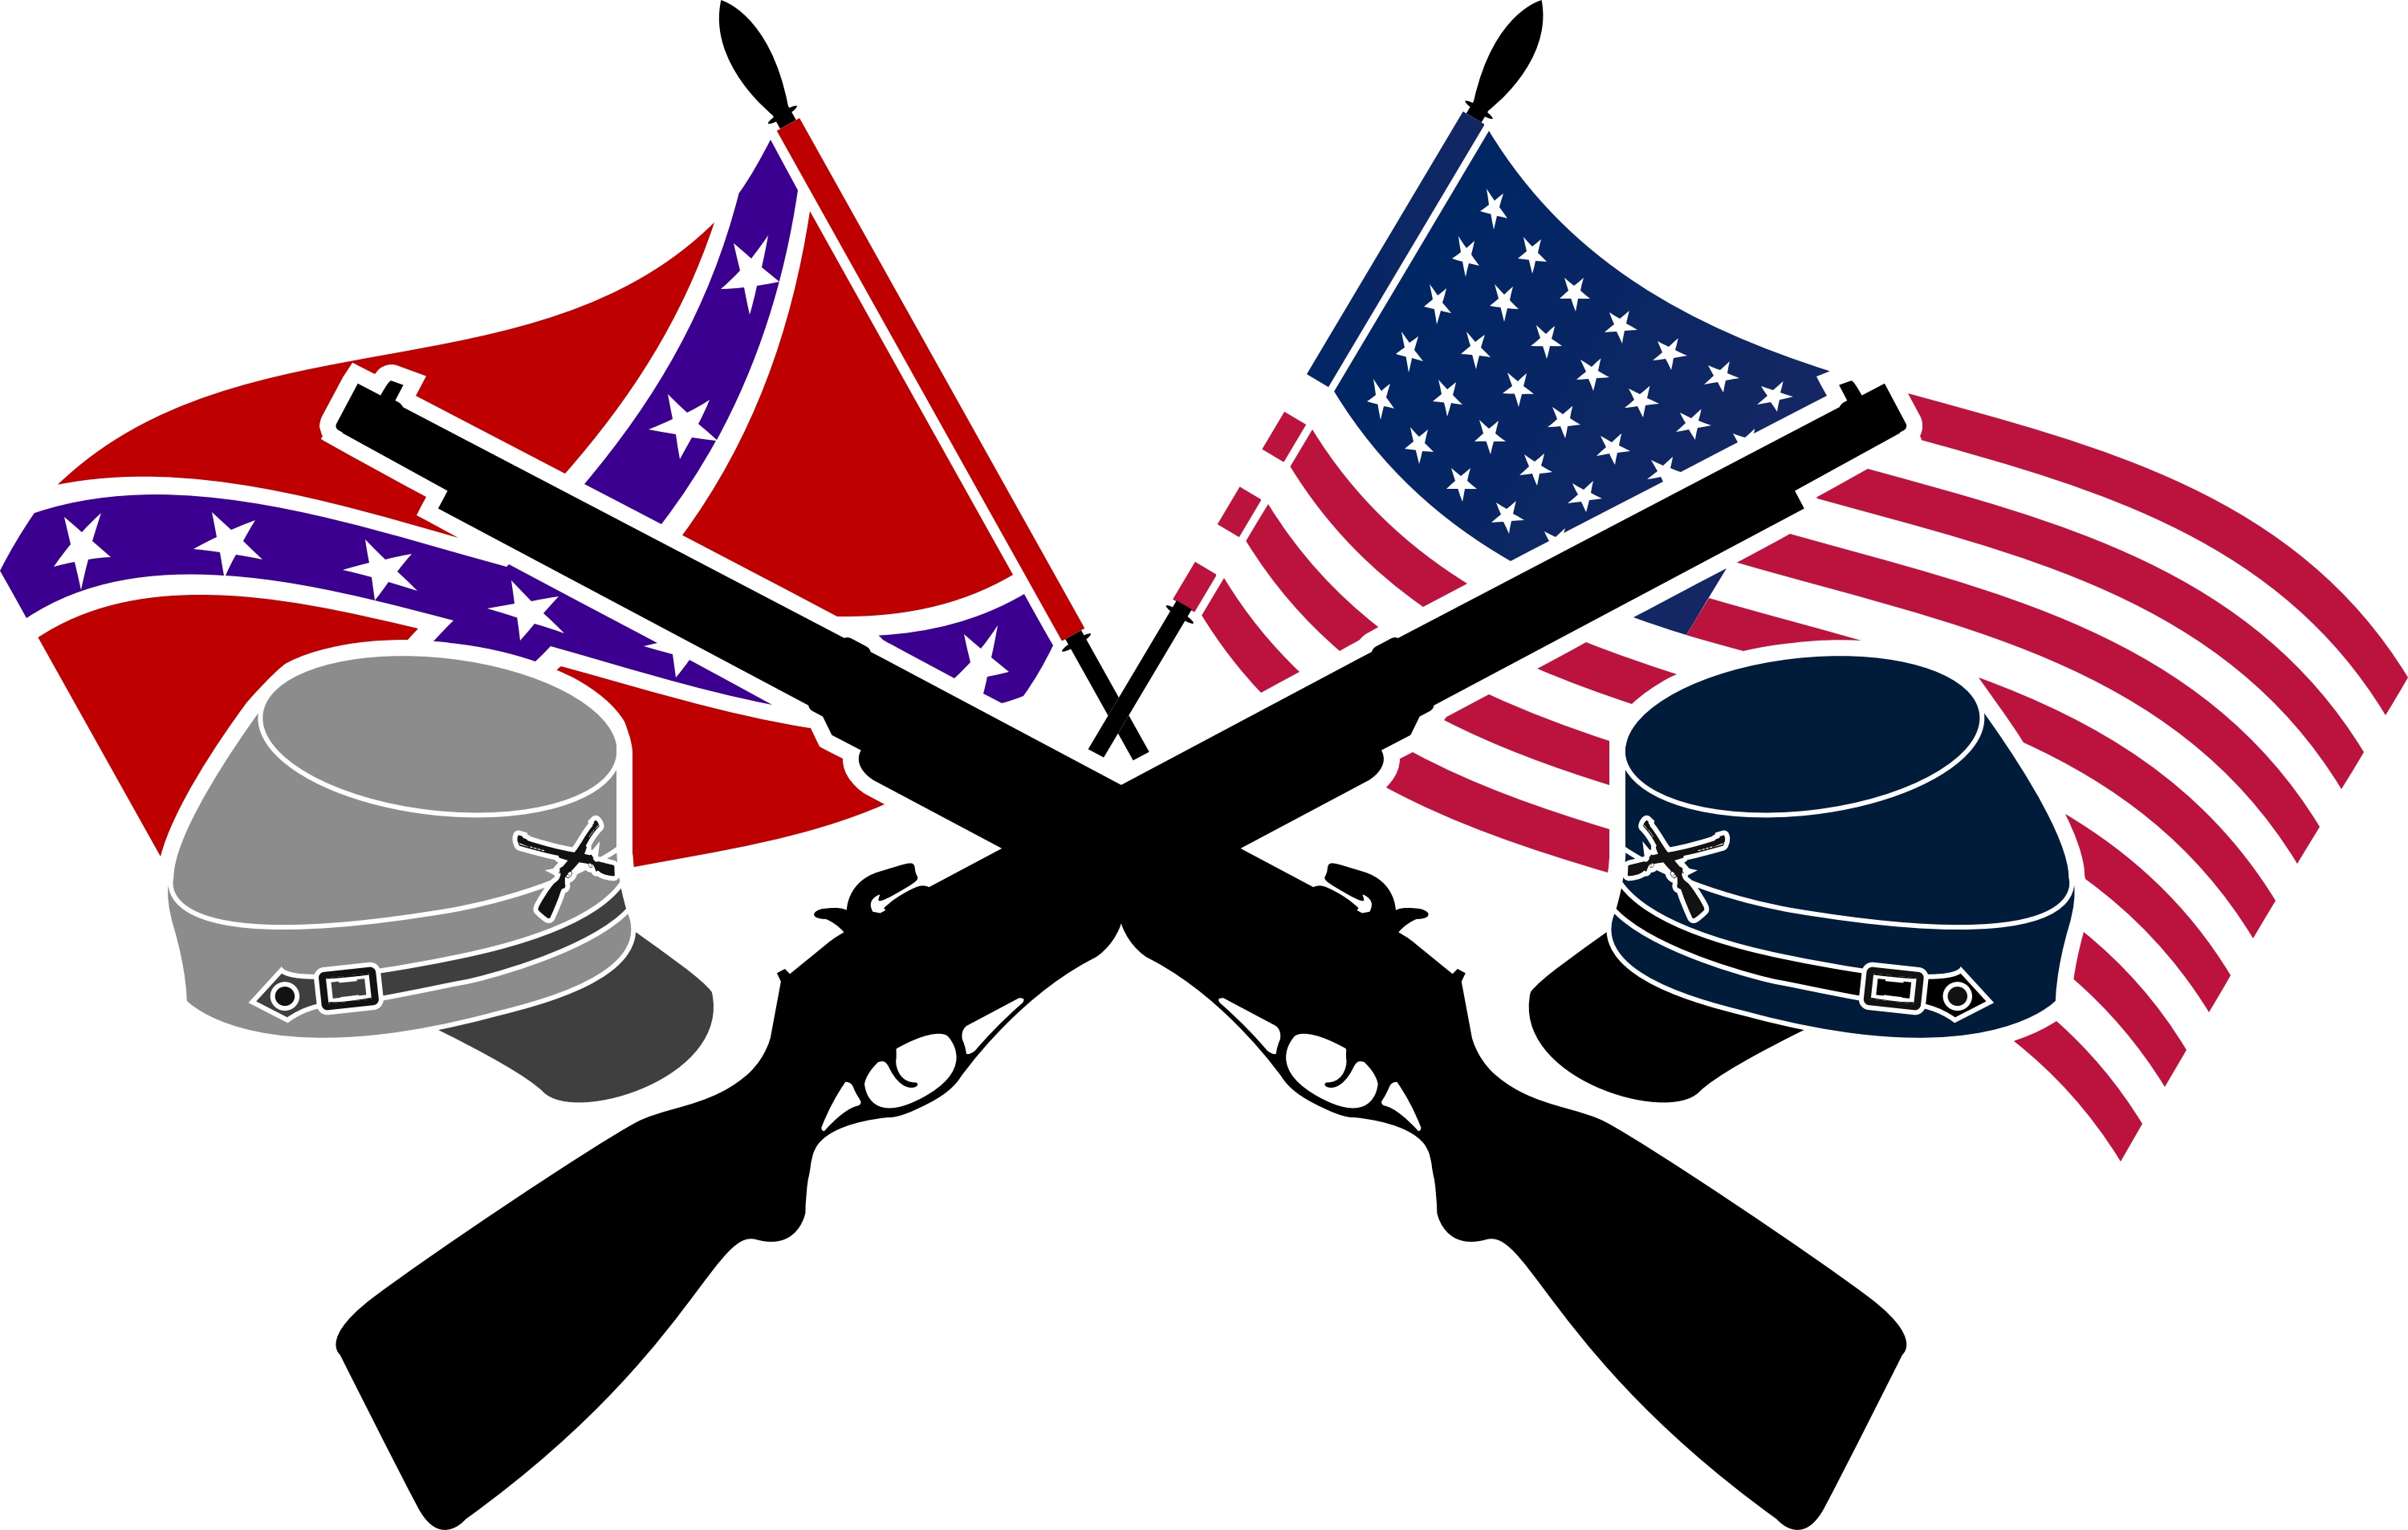 12 April 1861  The American Civil War Begins